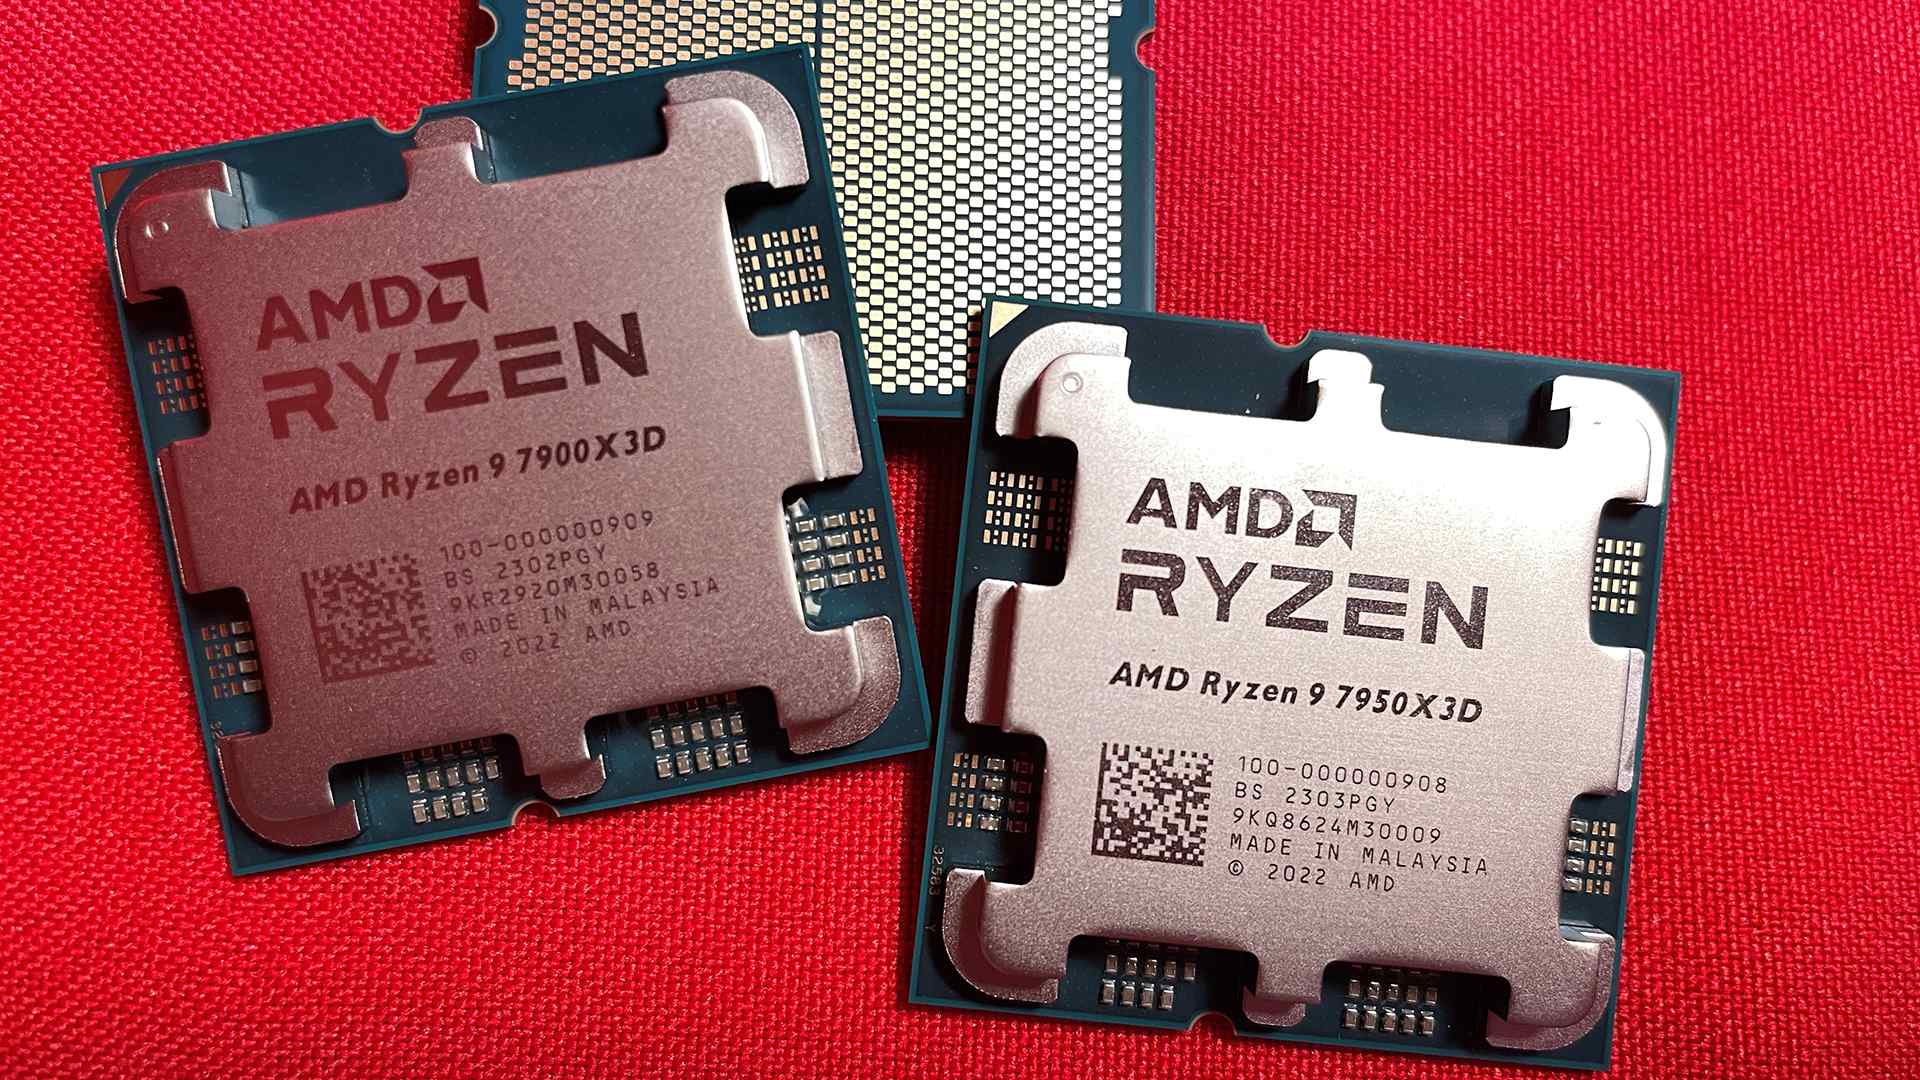 Đánh giá CPU AMD Ryzen 9 7950X3D - Đẳng cấp dẫn đầu